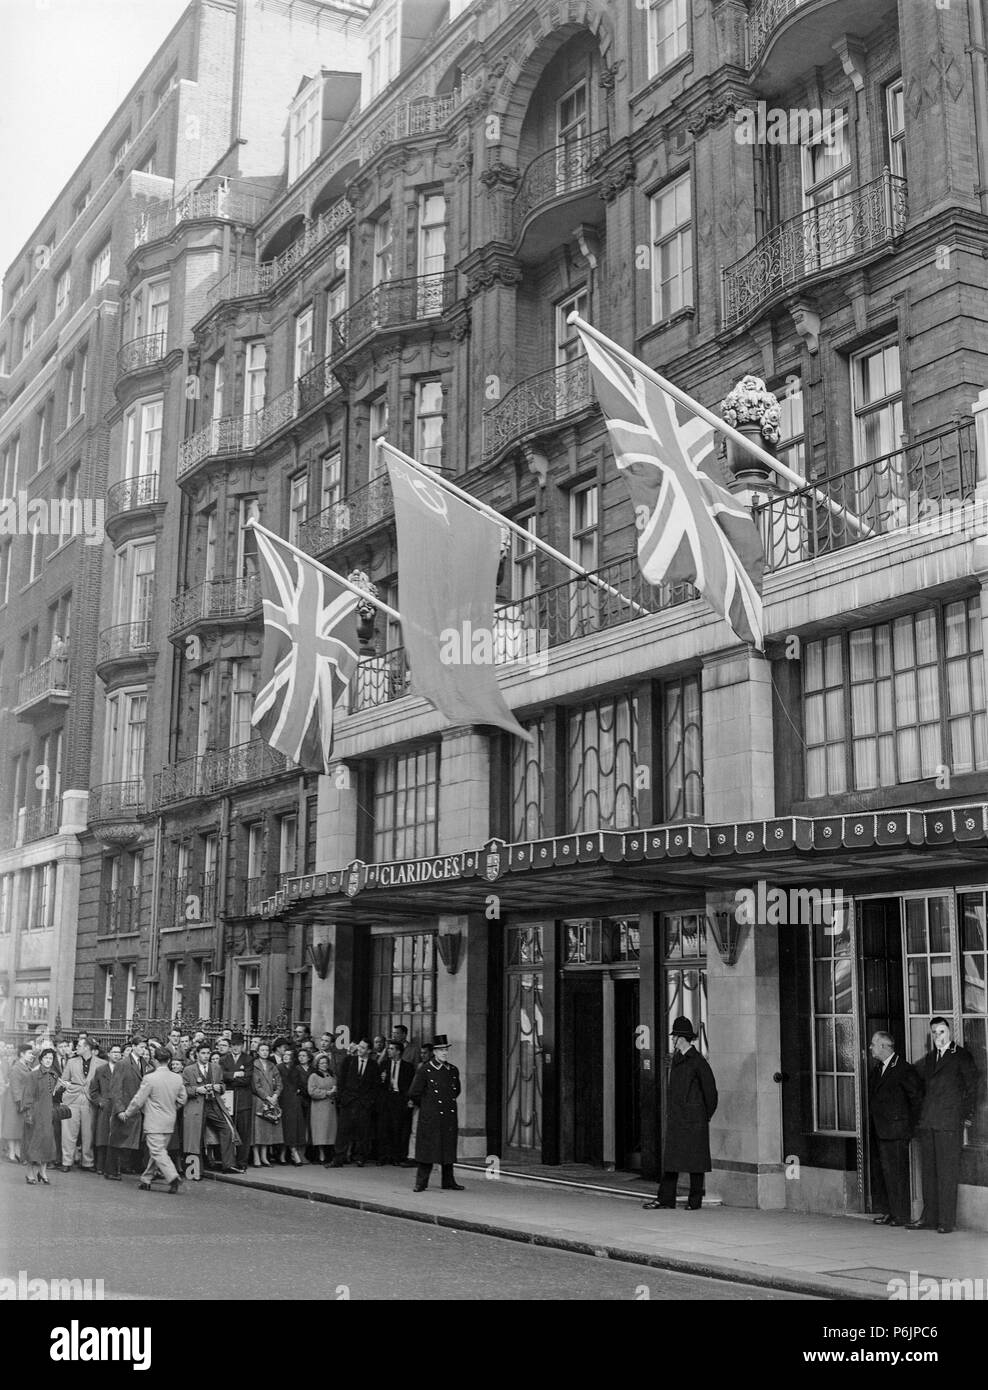 L'avant de l'hôtel Claridges à Londres pendant les années 1950. Les membres du public et les cadreurs dans l'attente de l'arrivée d'une personne célèbre. Banque D'Images